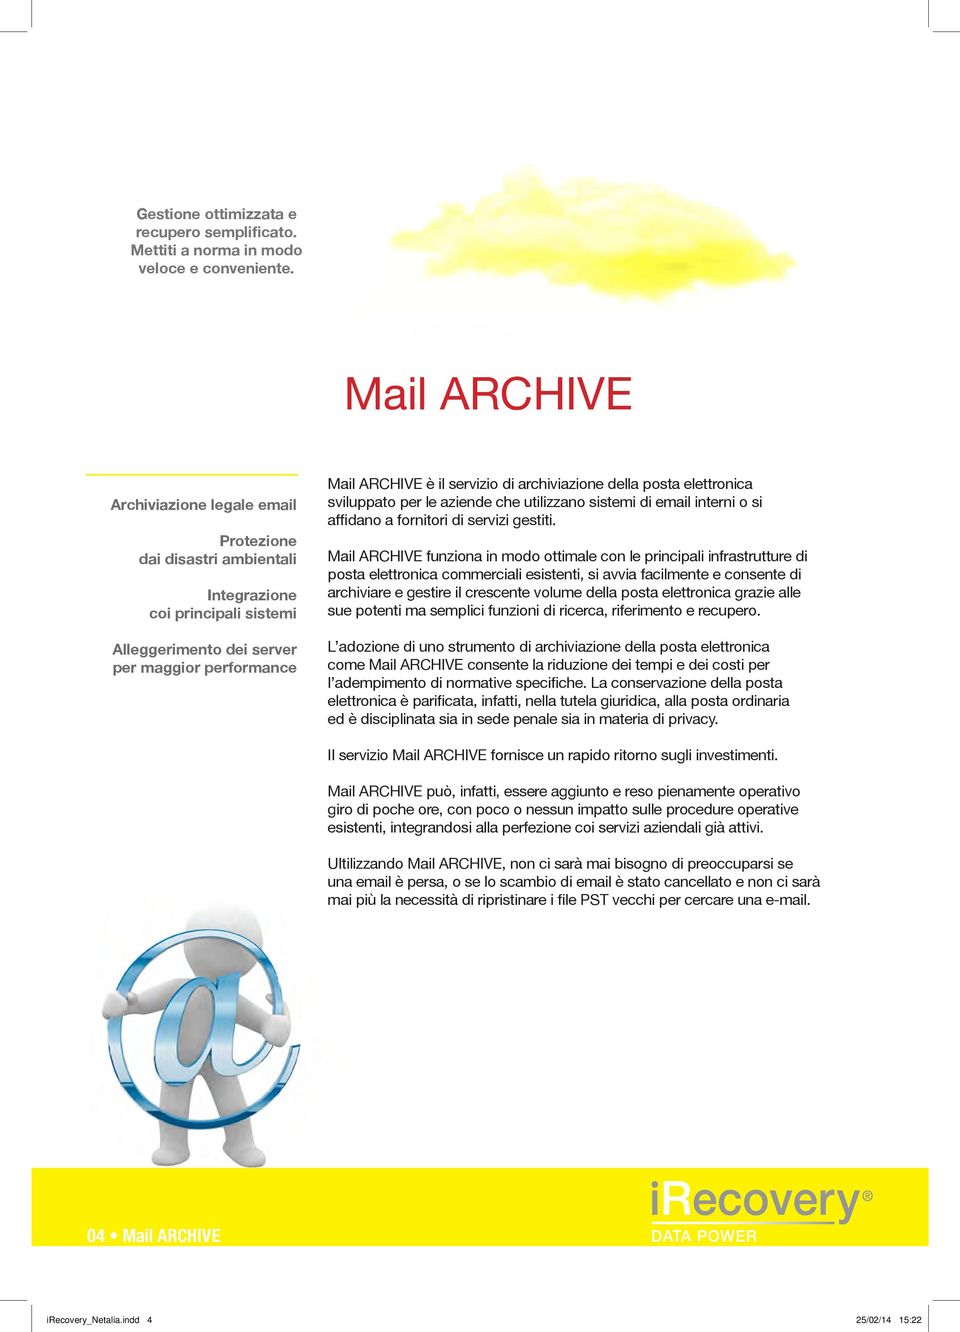 archiviazione della posta elettronica sviluppato per le aziende che utilizzano sistemi di email interni o si affidano a fornitori di servizi gestiti.